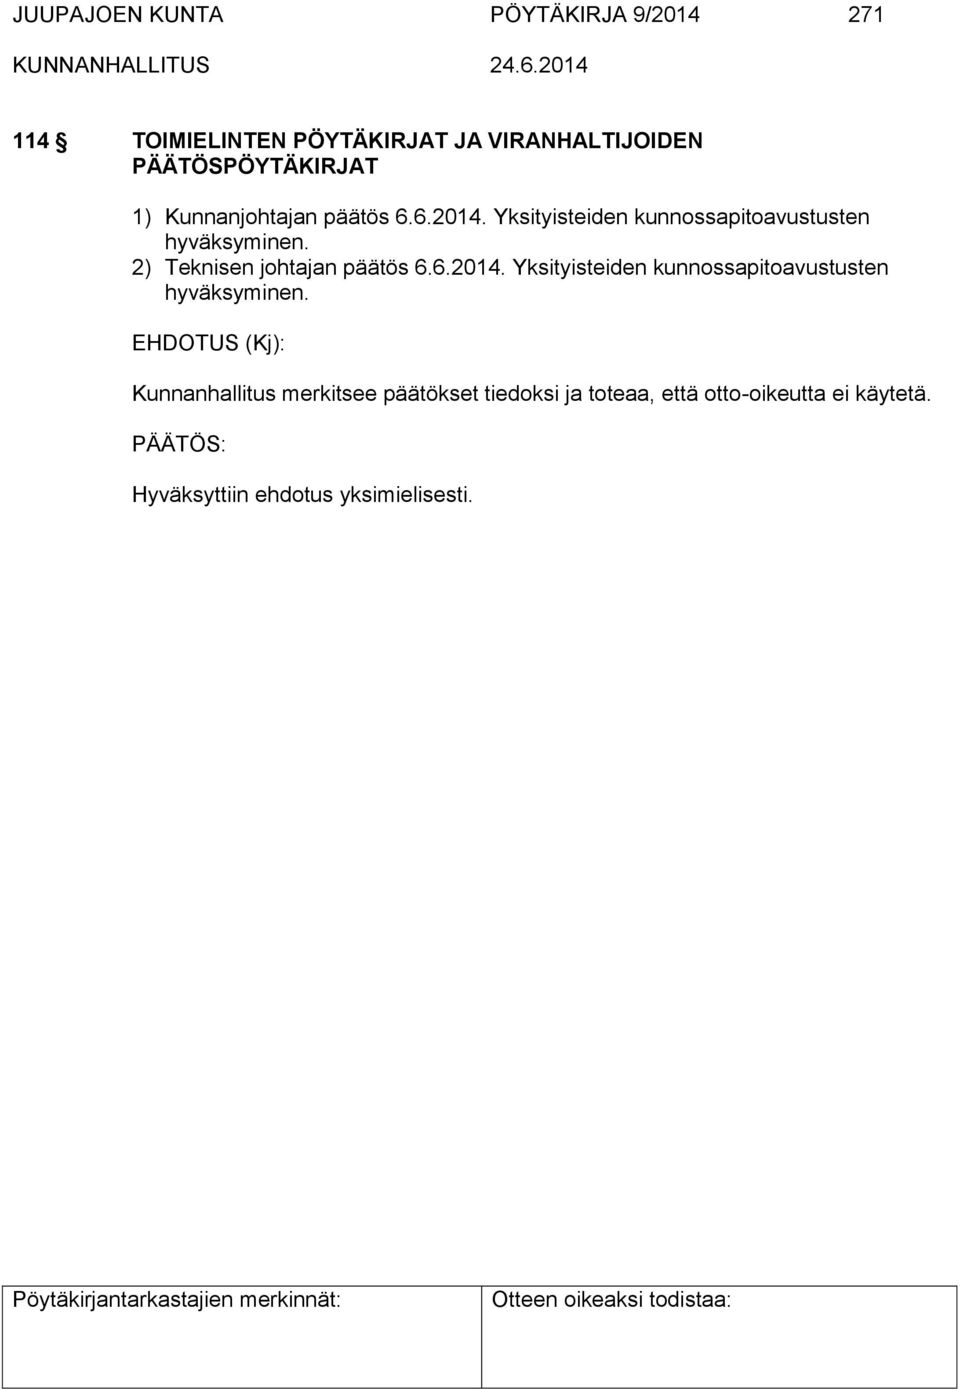 Yksityisteiden kunnossapitoavustusten hyväksyminen. 2) Teknisen johtajan päätös 6.6.2014.